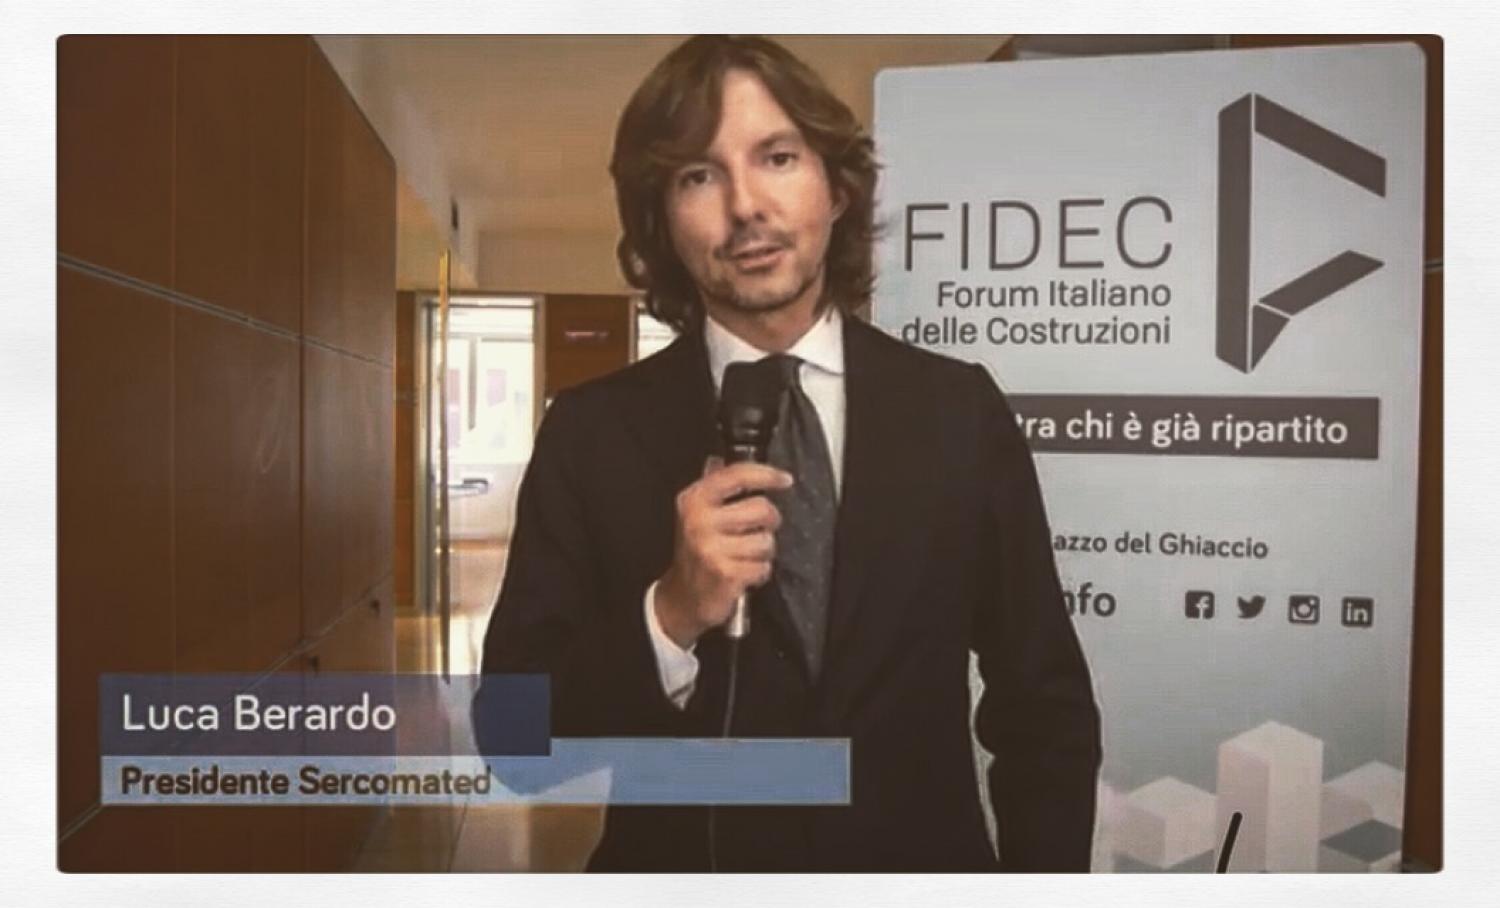 FIDEC, forum italiano delle costruzioni